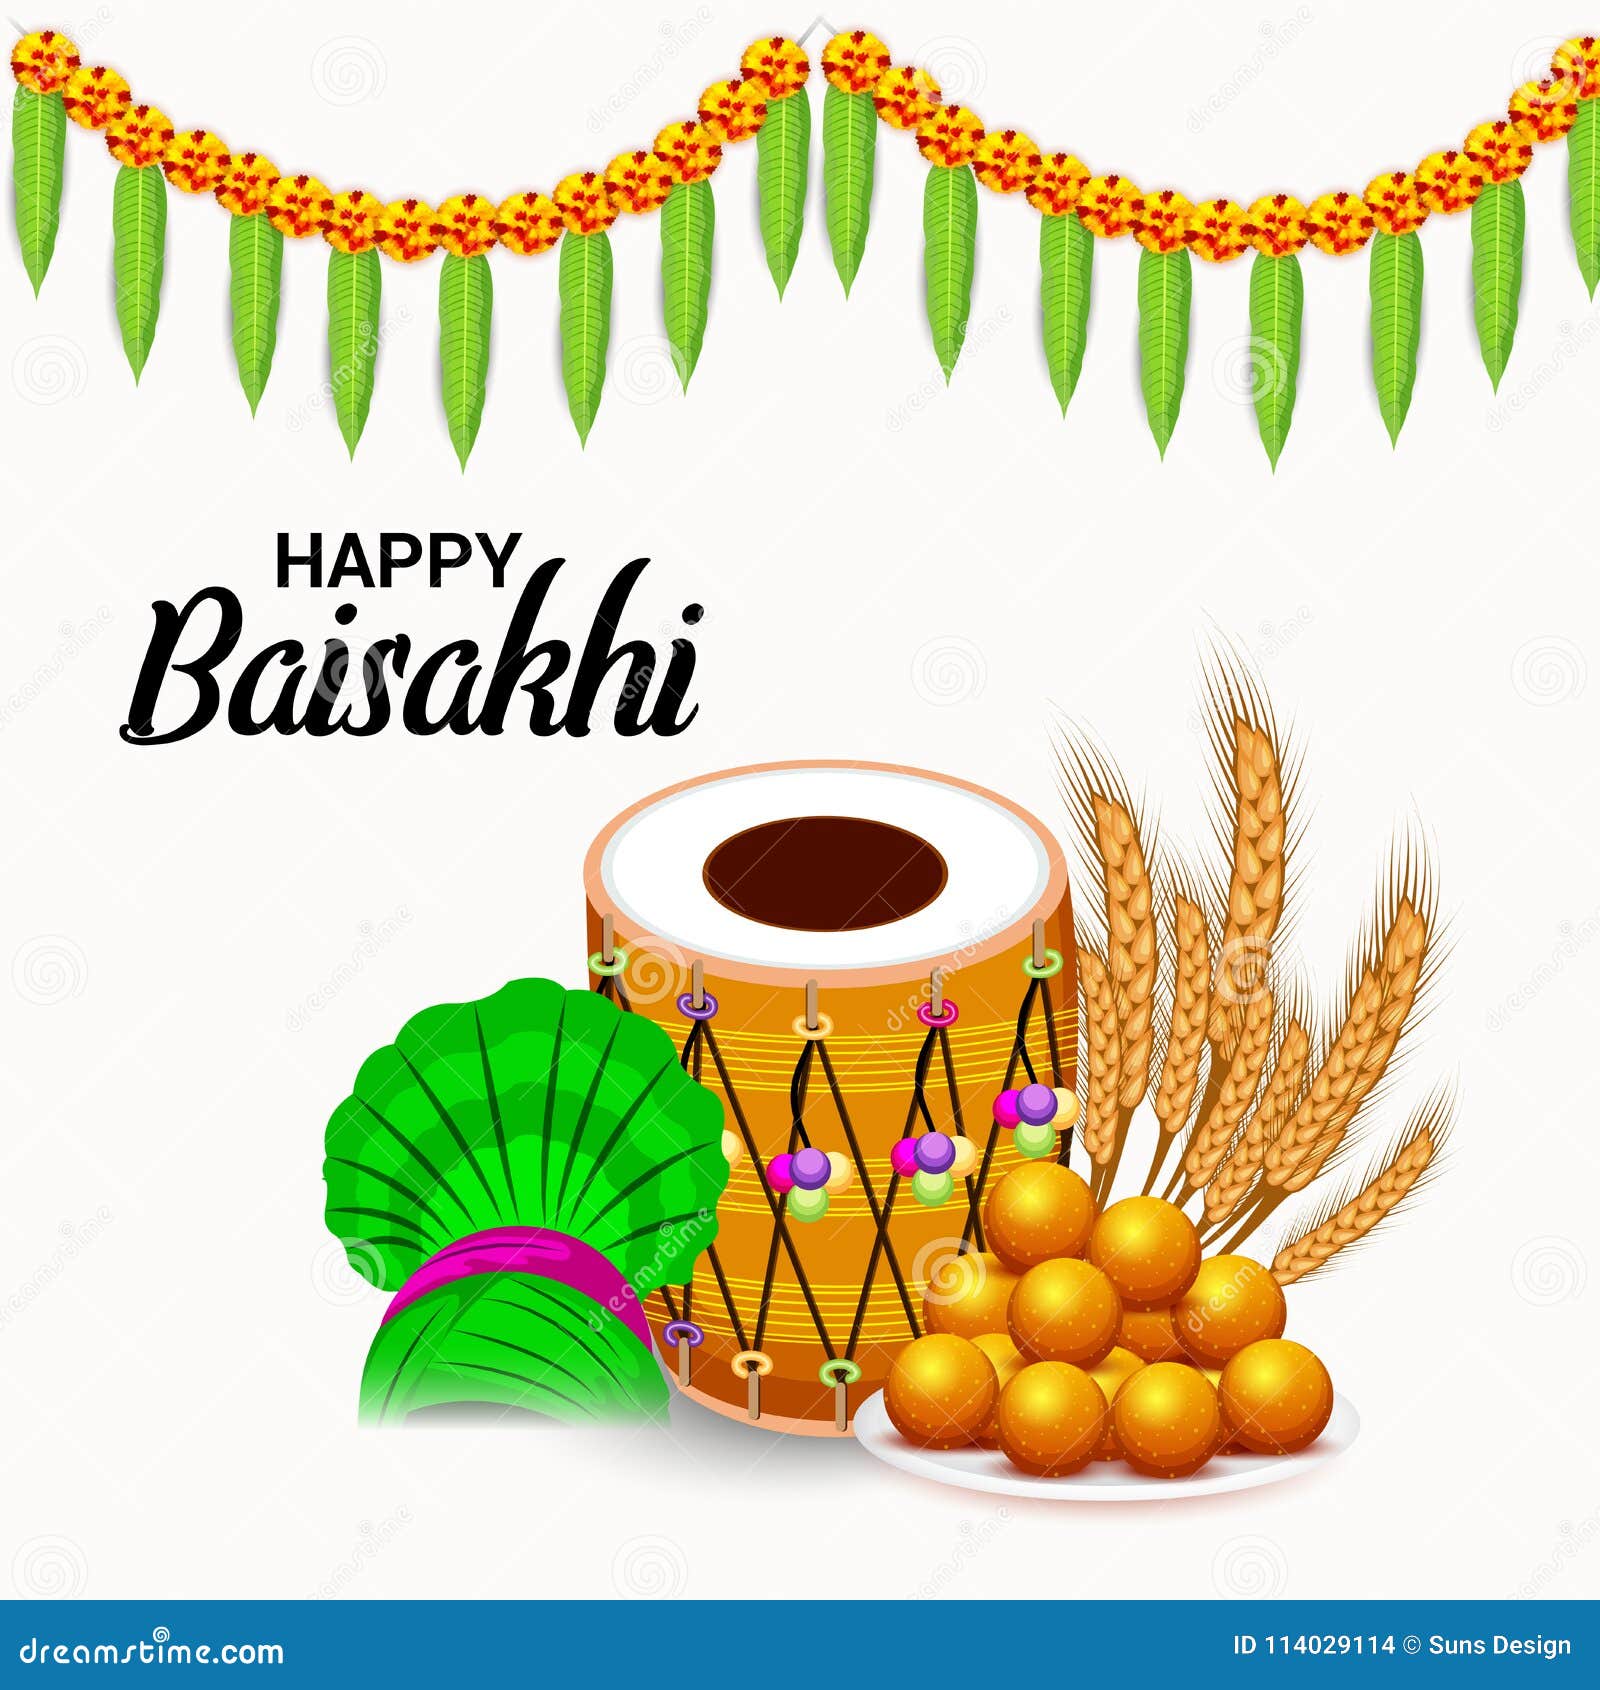 Happy Baisakhi Punjabi Festival Celebration. Stock Illustration ...